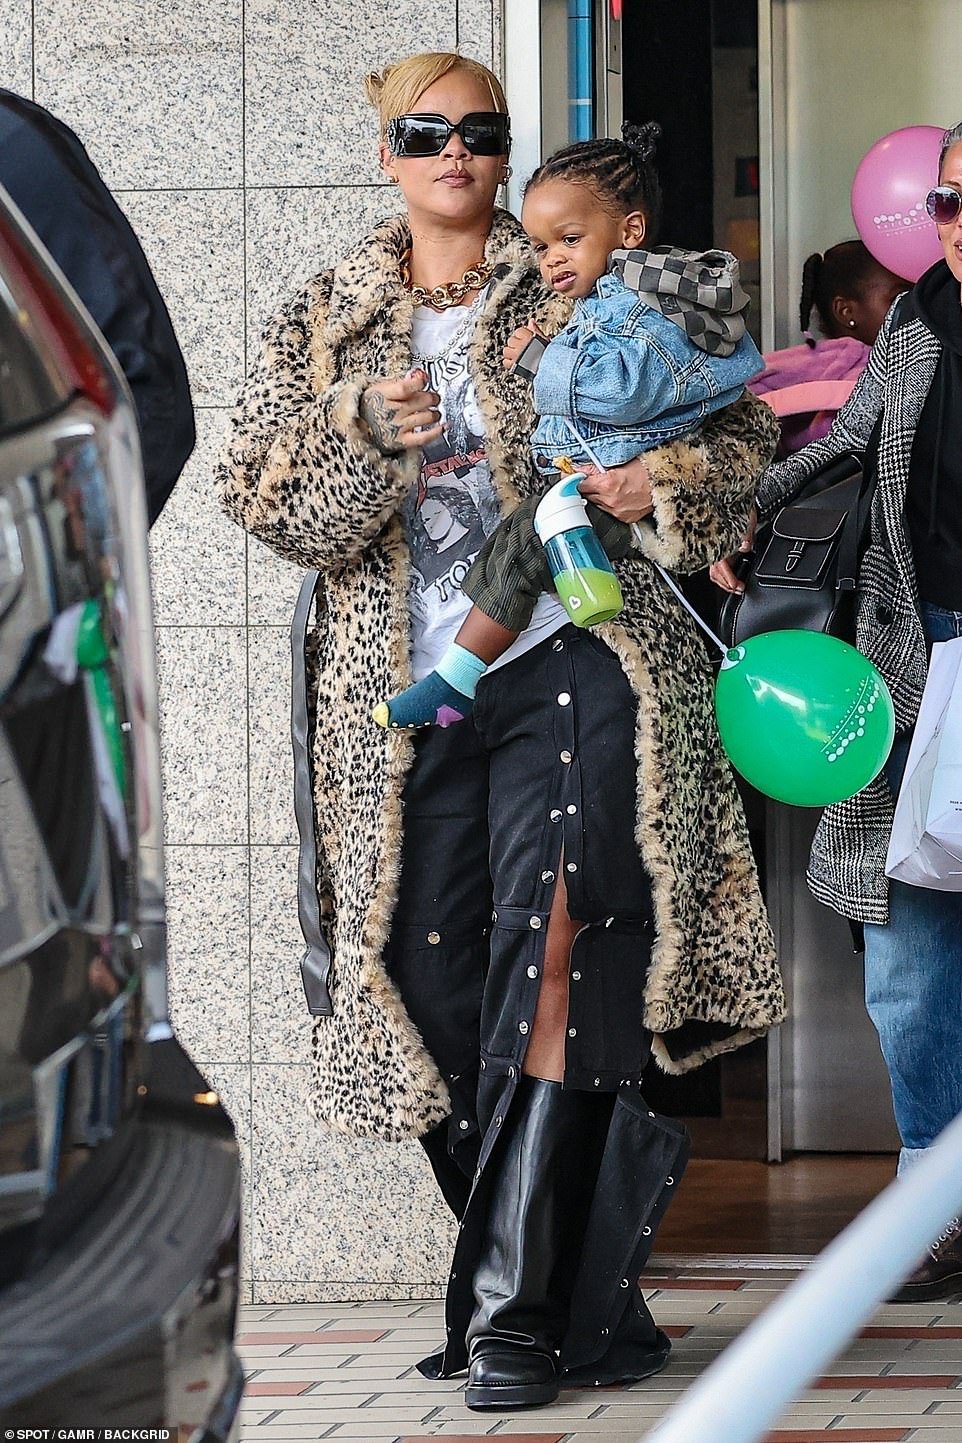 Rihanna com certeza é uma mãe estilosa, mesmo quando está fora do tapete vermelho.  A cantora do hit Diamonds, de 36 anos, foi vista com uma roupa muito descolada quando saiu em um passeio raro com seu filho pequeno, RZA, na quinta-feira, no BallnBounce Kids Playhouse, em Los Angeles.